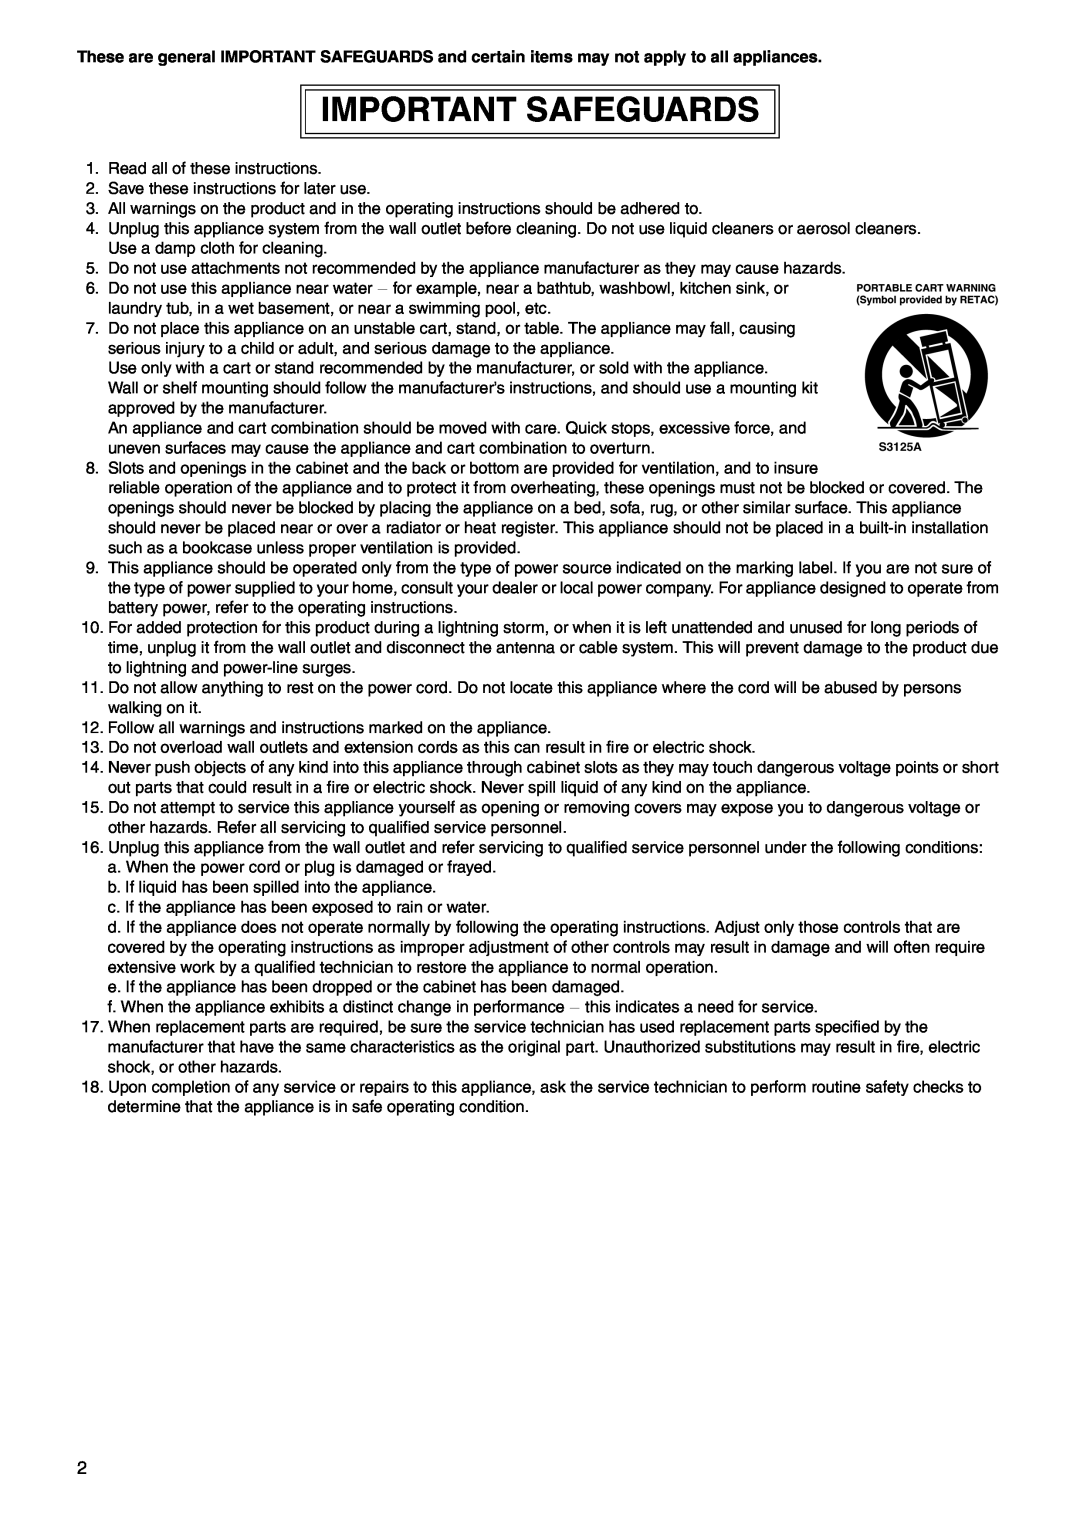 JVC VN-E4 manual Important Safeguards 